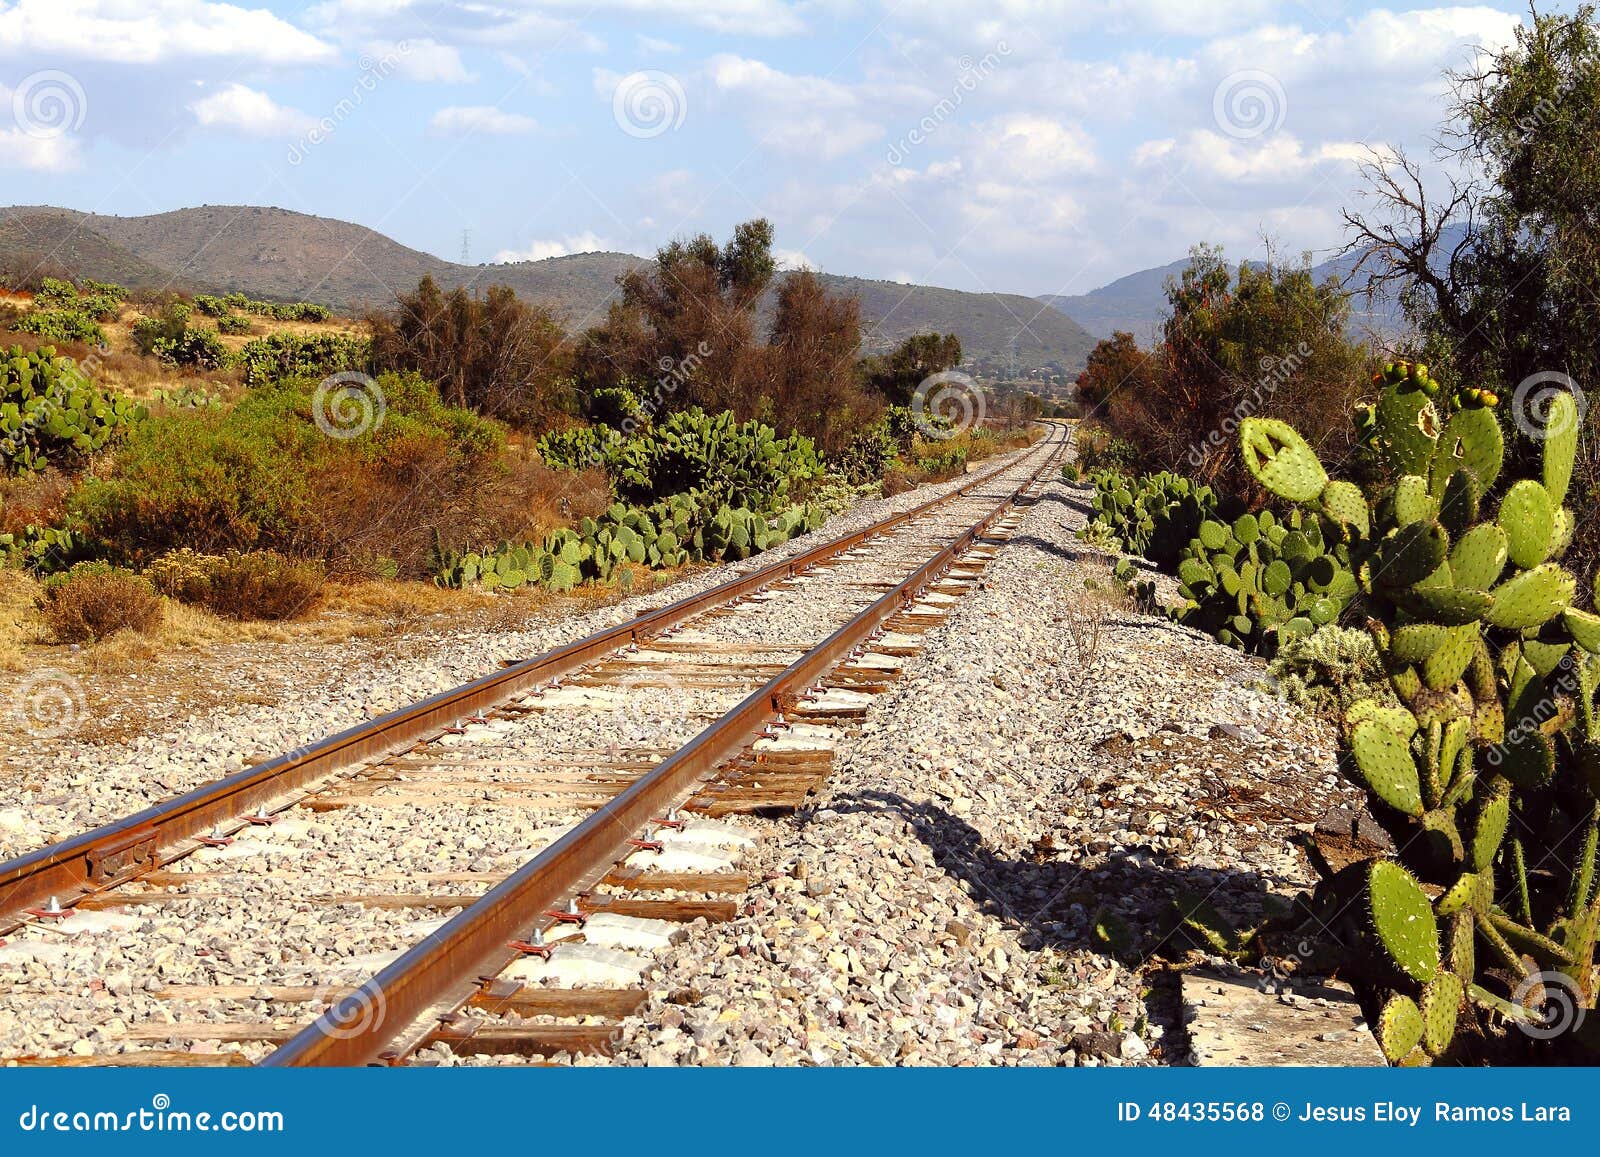 railroad near teotihuacan mexico ii